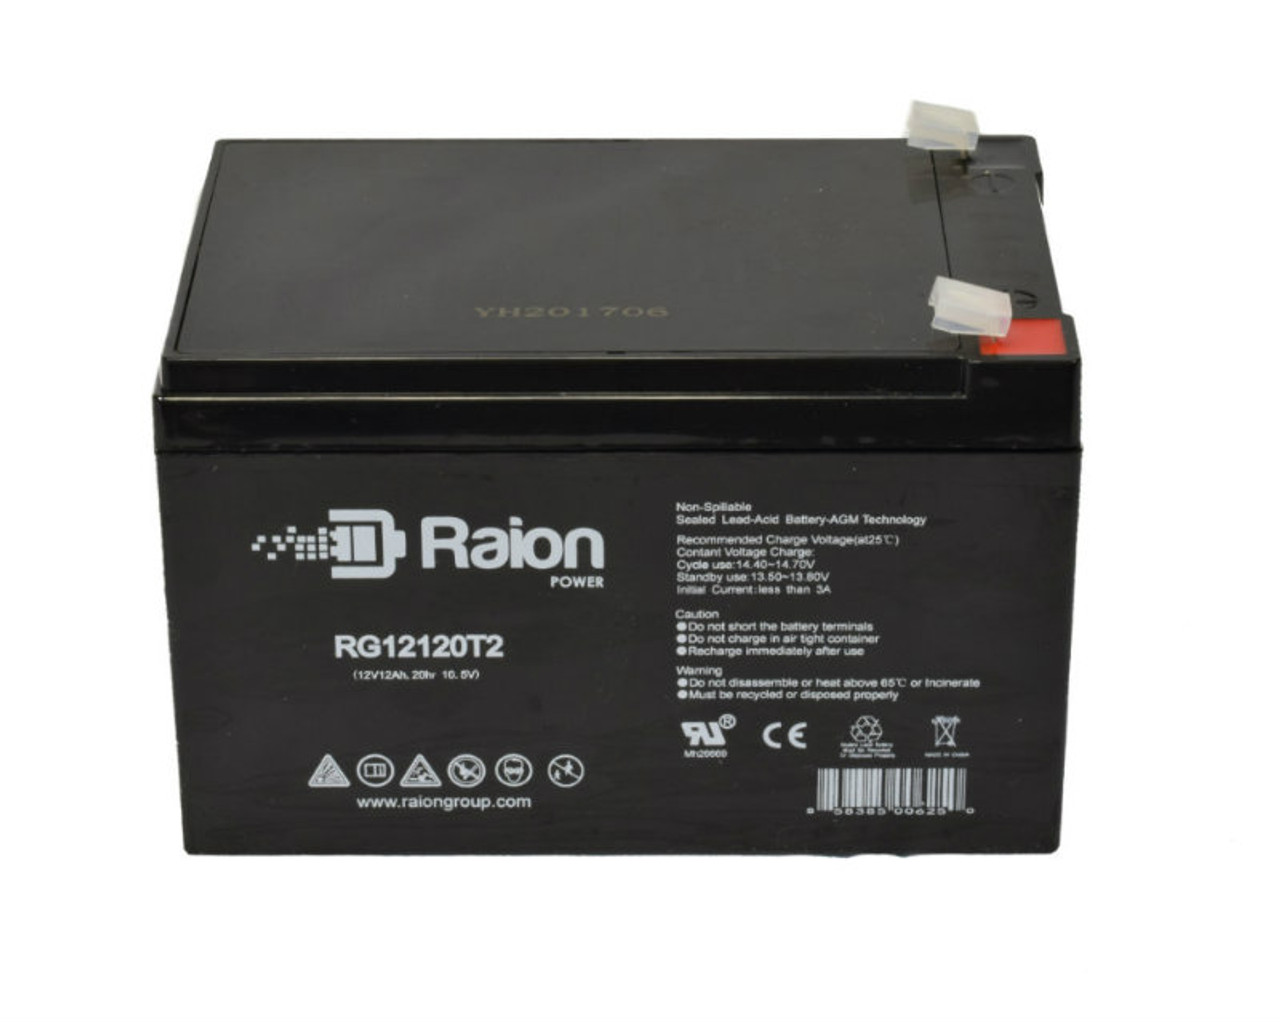 Raion Power RG12120T2 SLA Battery for Daymak Grunt ATV